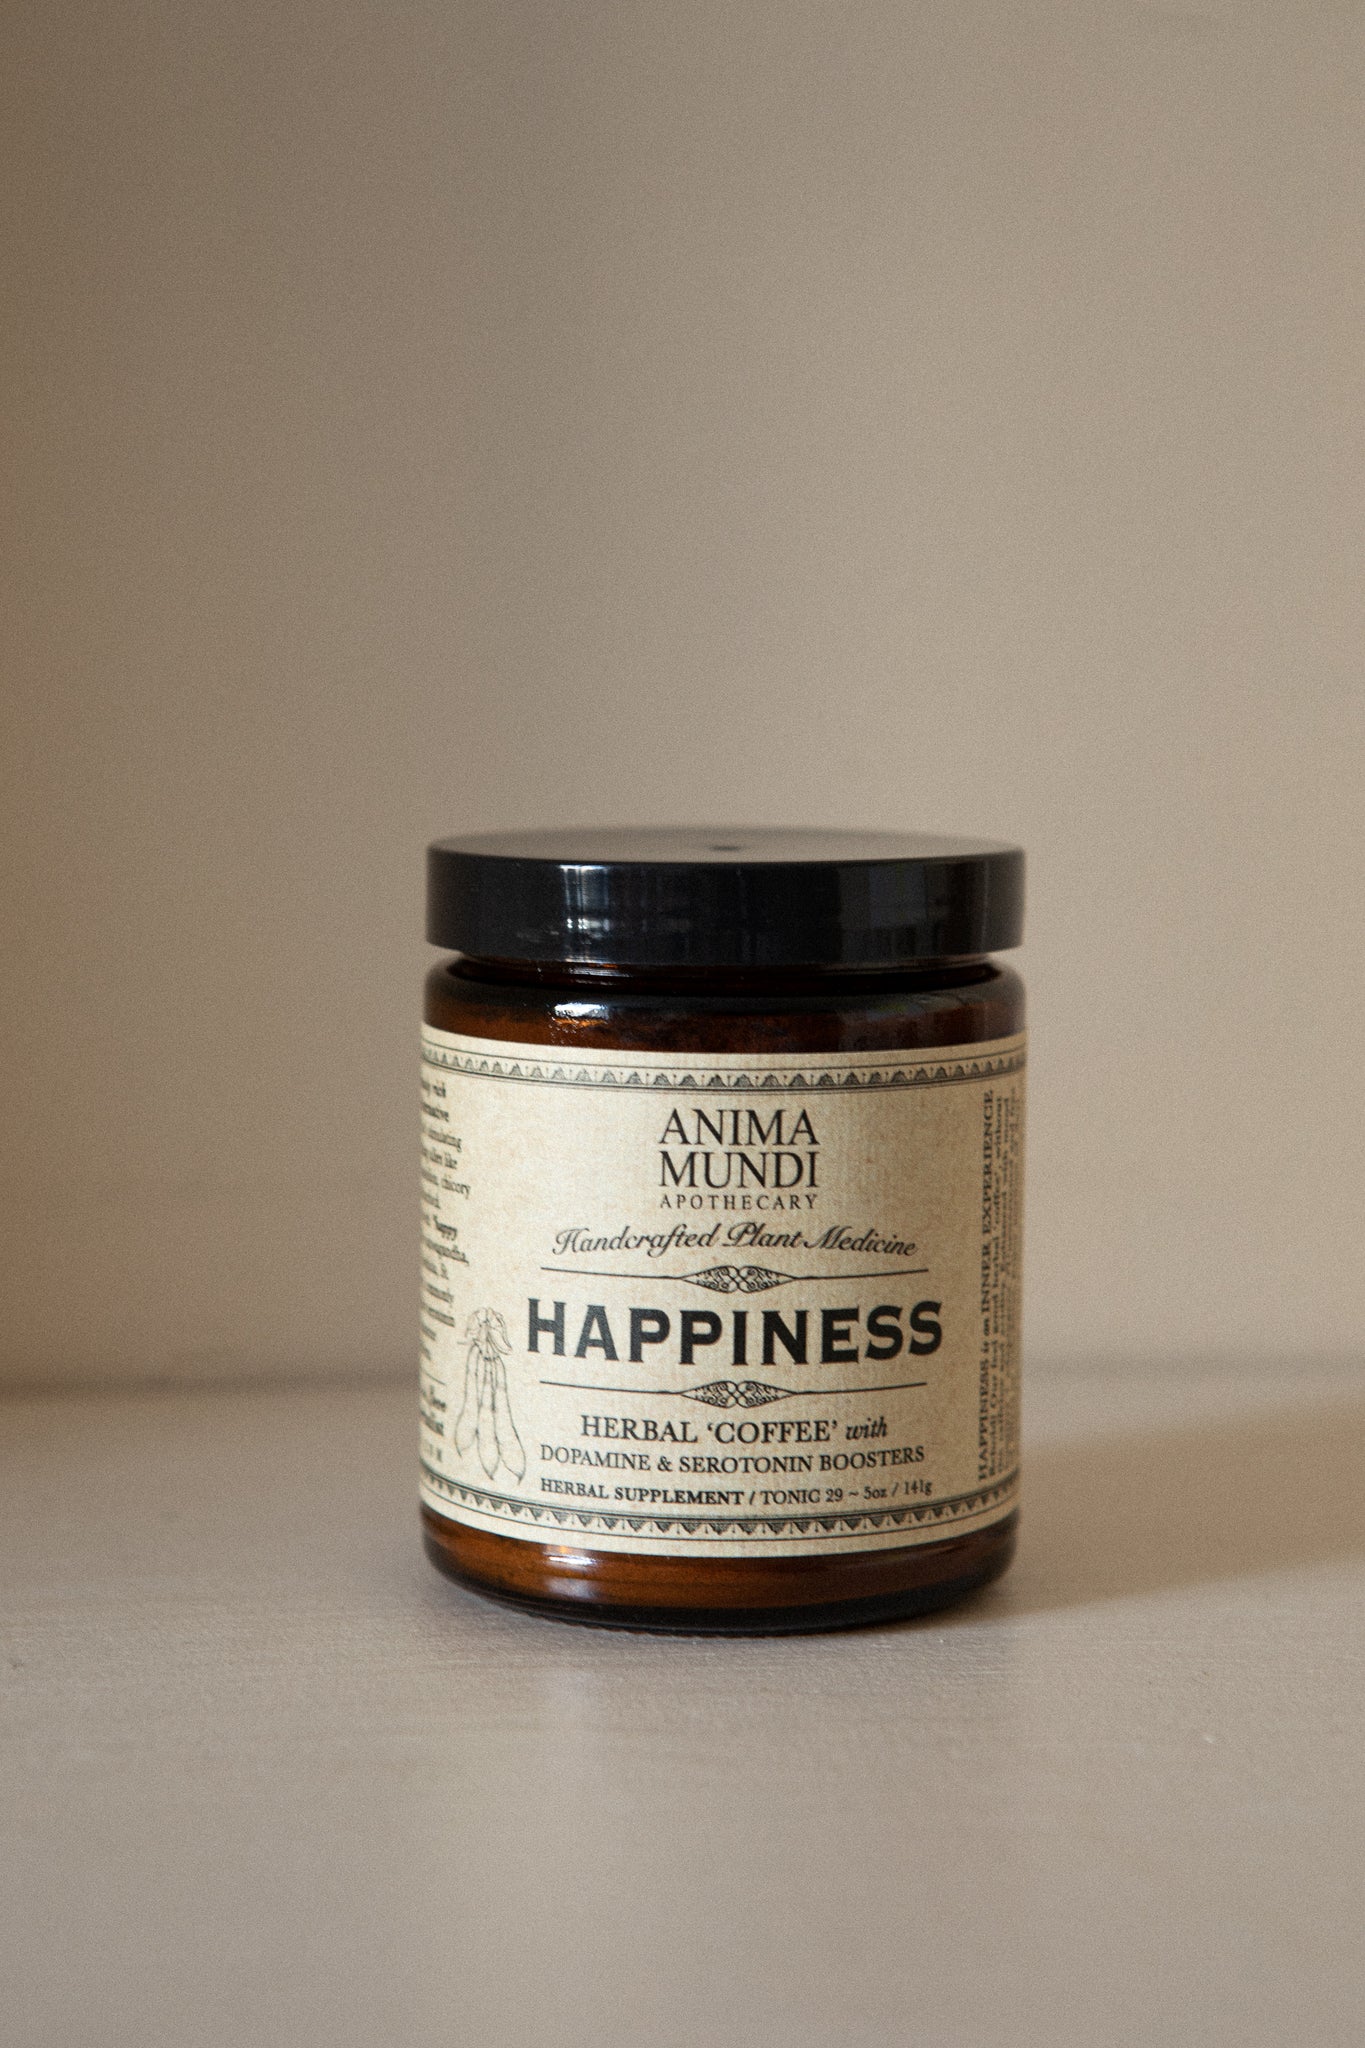 Anima Mundi Happiness Powder: Herbal Coffee